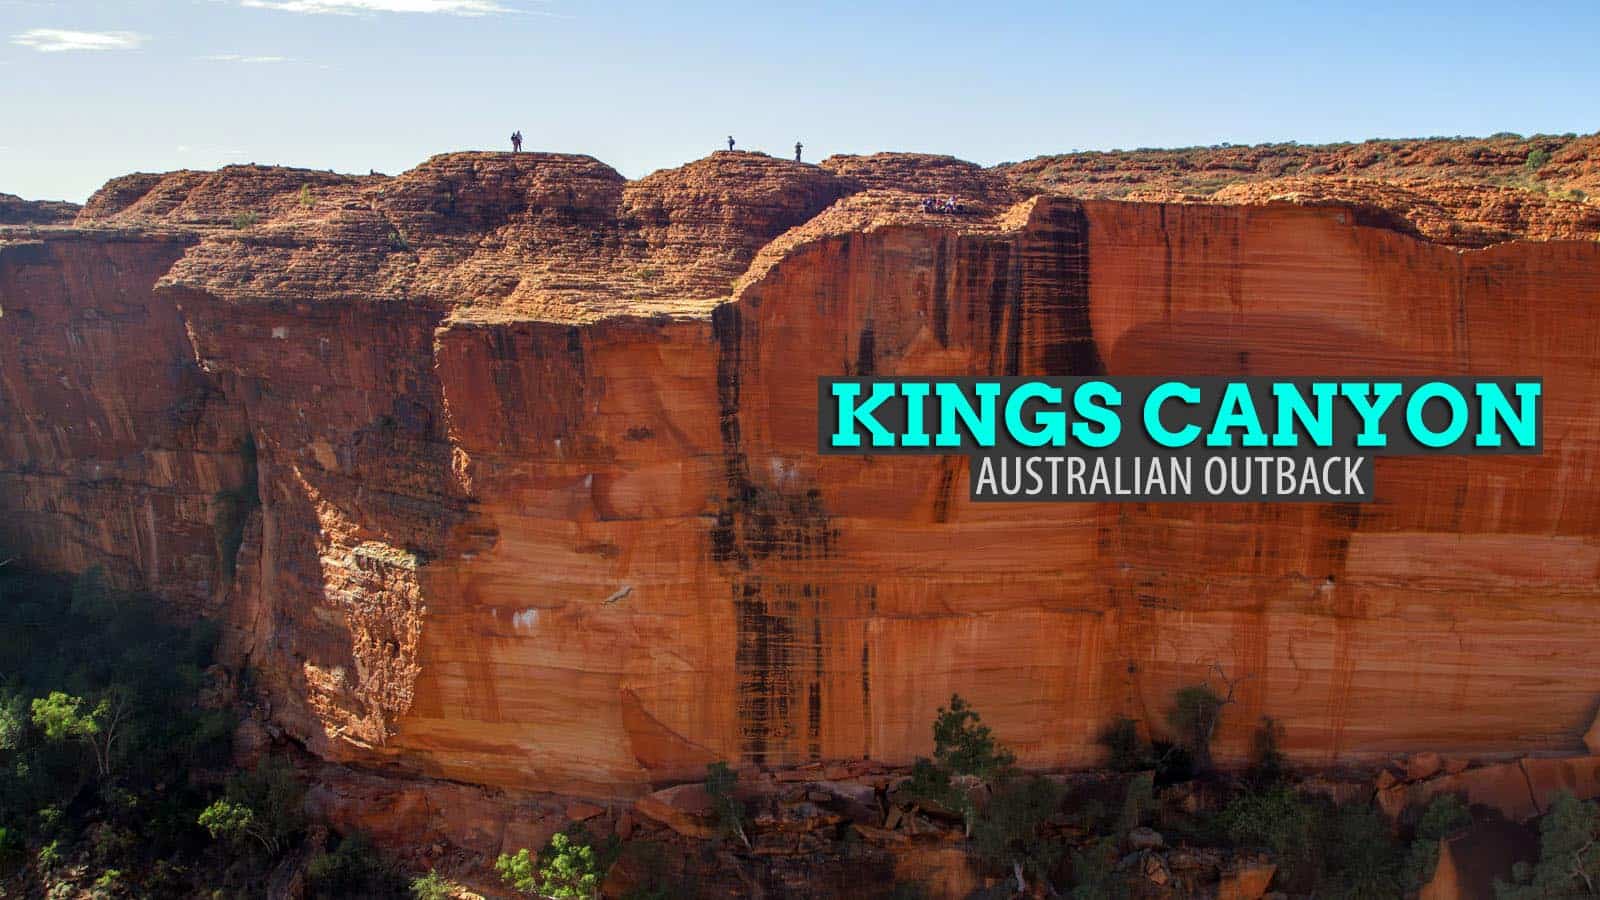 Résultat de recherche d'images pour "photos kings canyon australia"